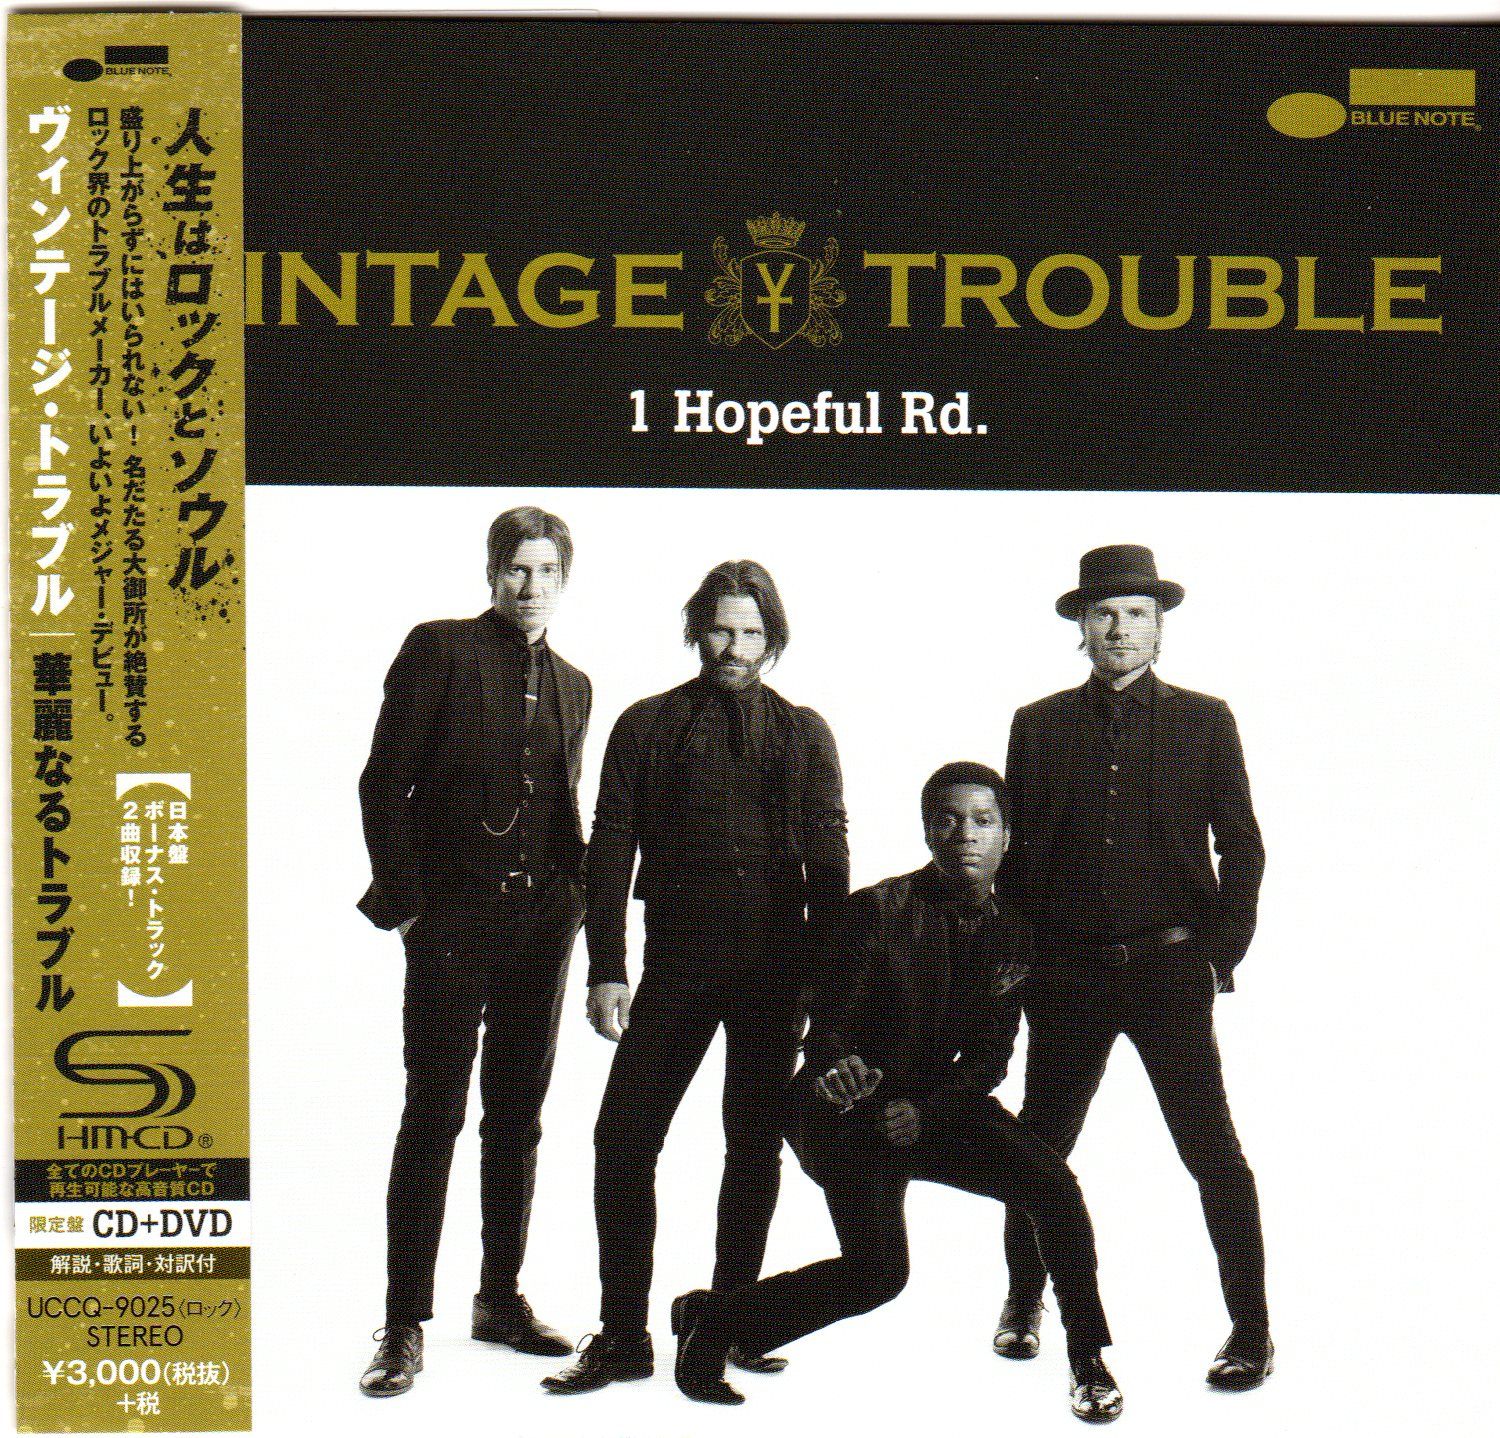 Vintage Trouble - 1 Hopeful Road - inc 2 bonus tracks + DVD | My ...